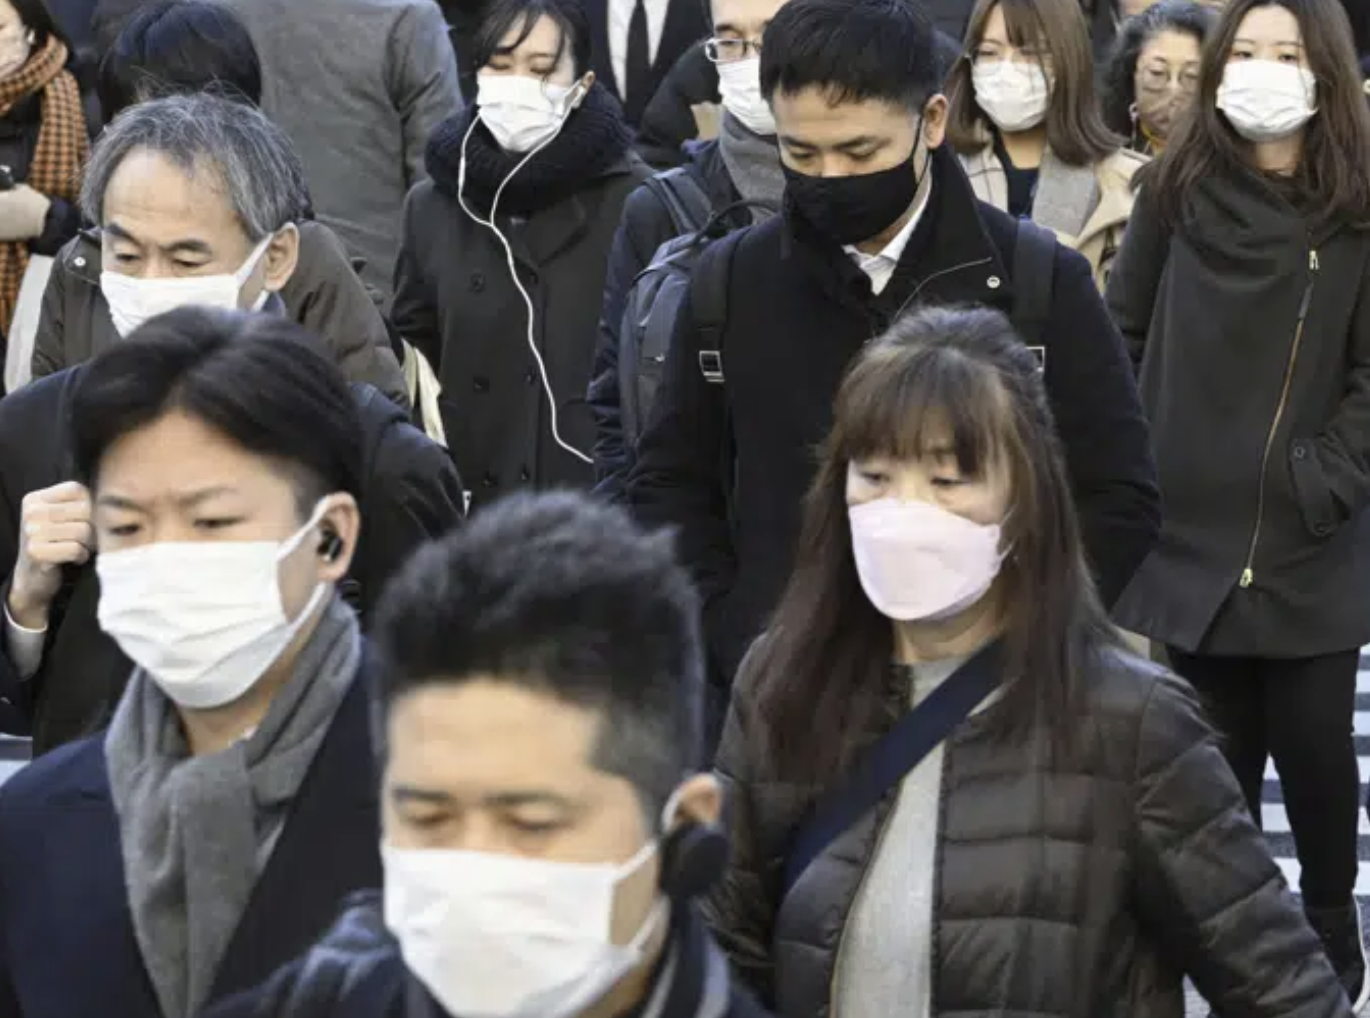 Commuters wear masks outside Tokyo Station